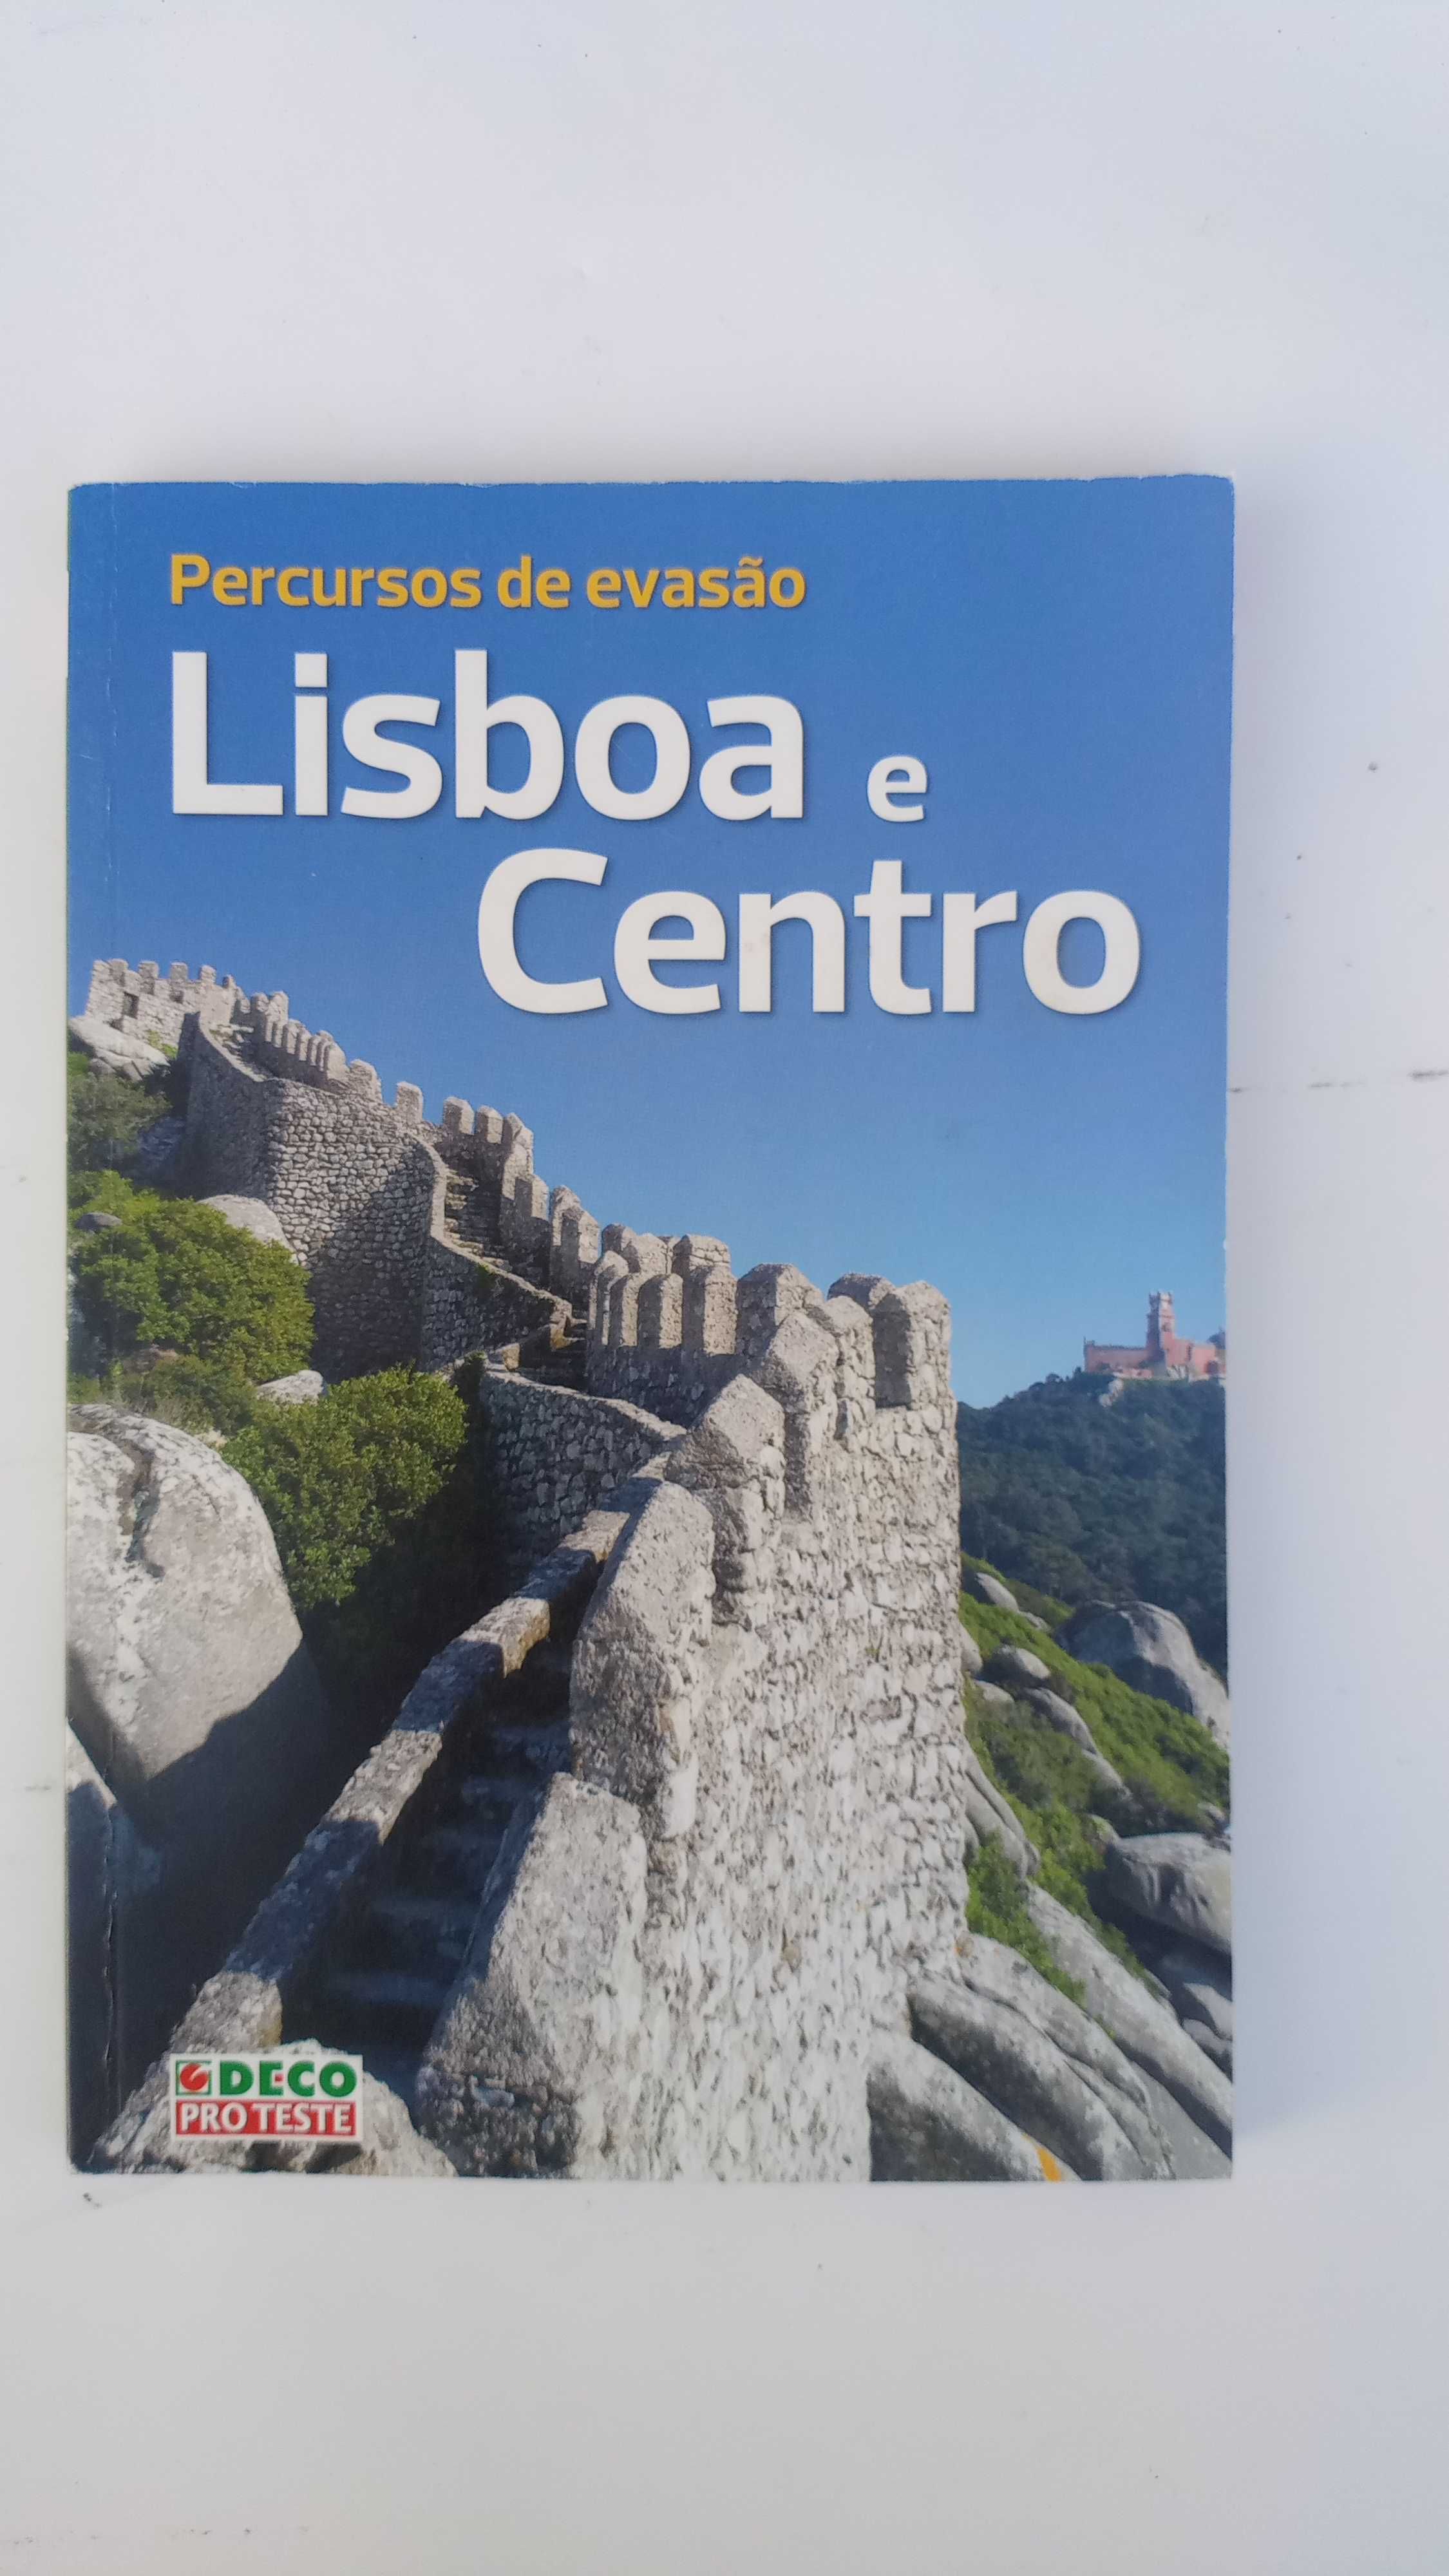 Guia de viagens Percursos de Evasão Lisboa e centro